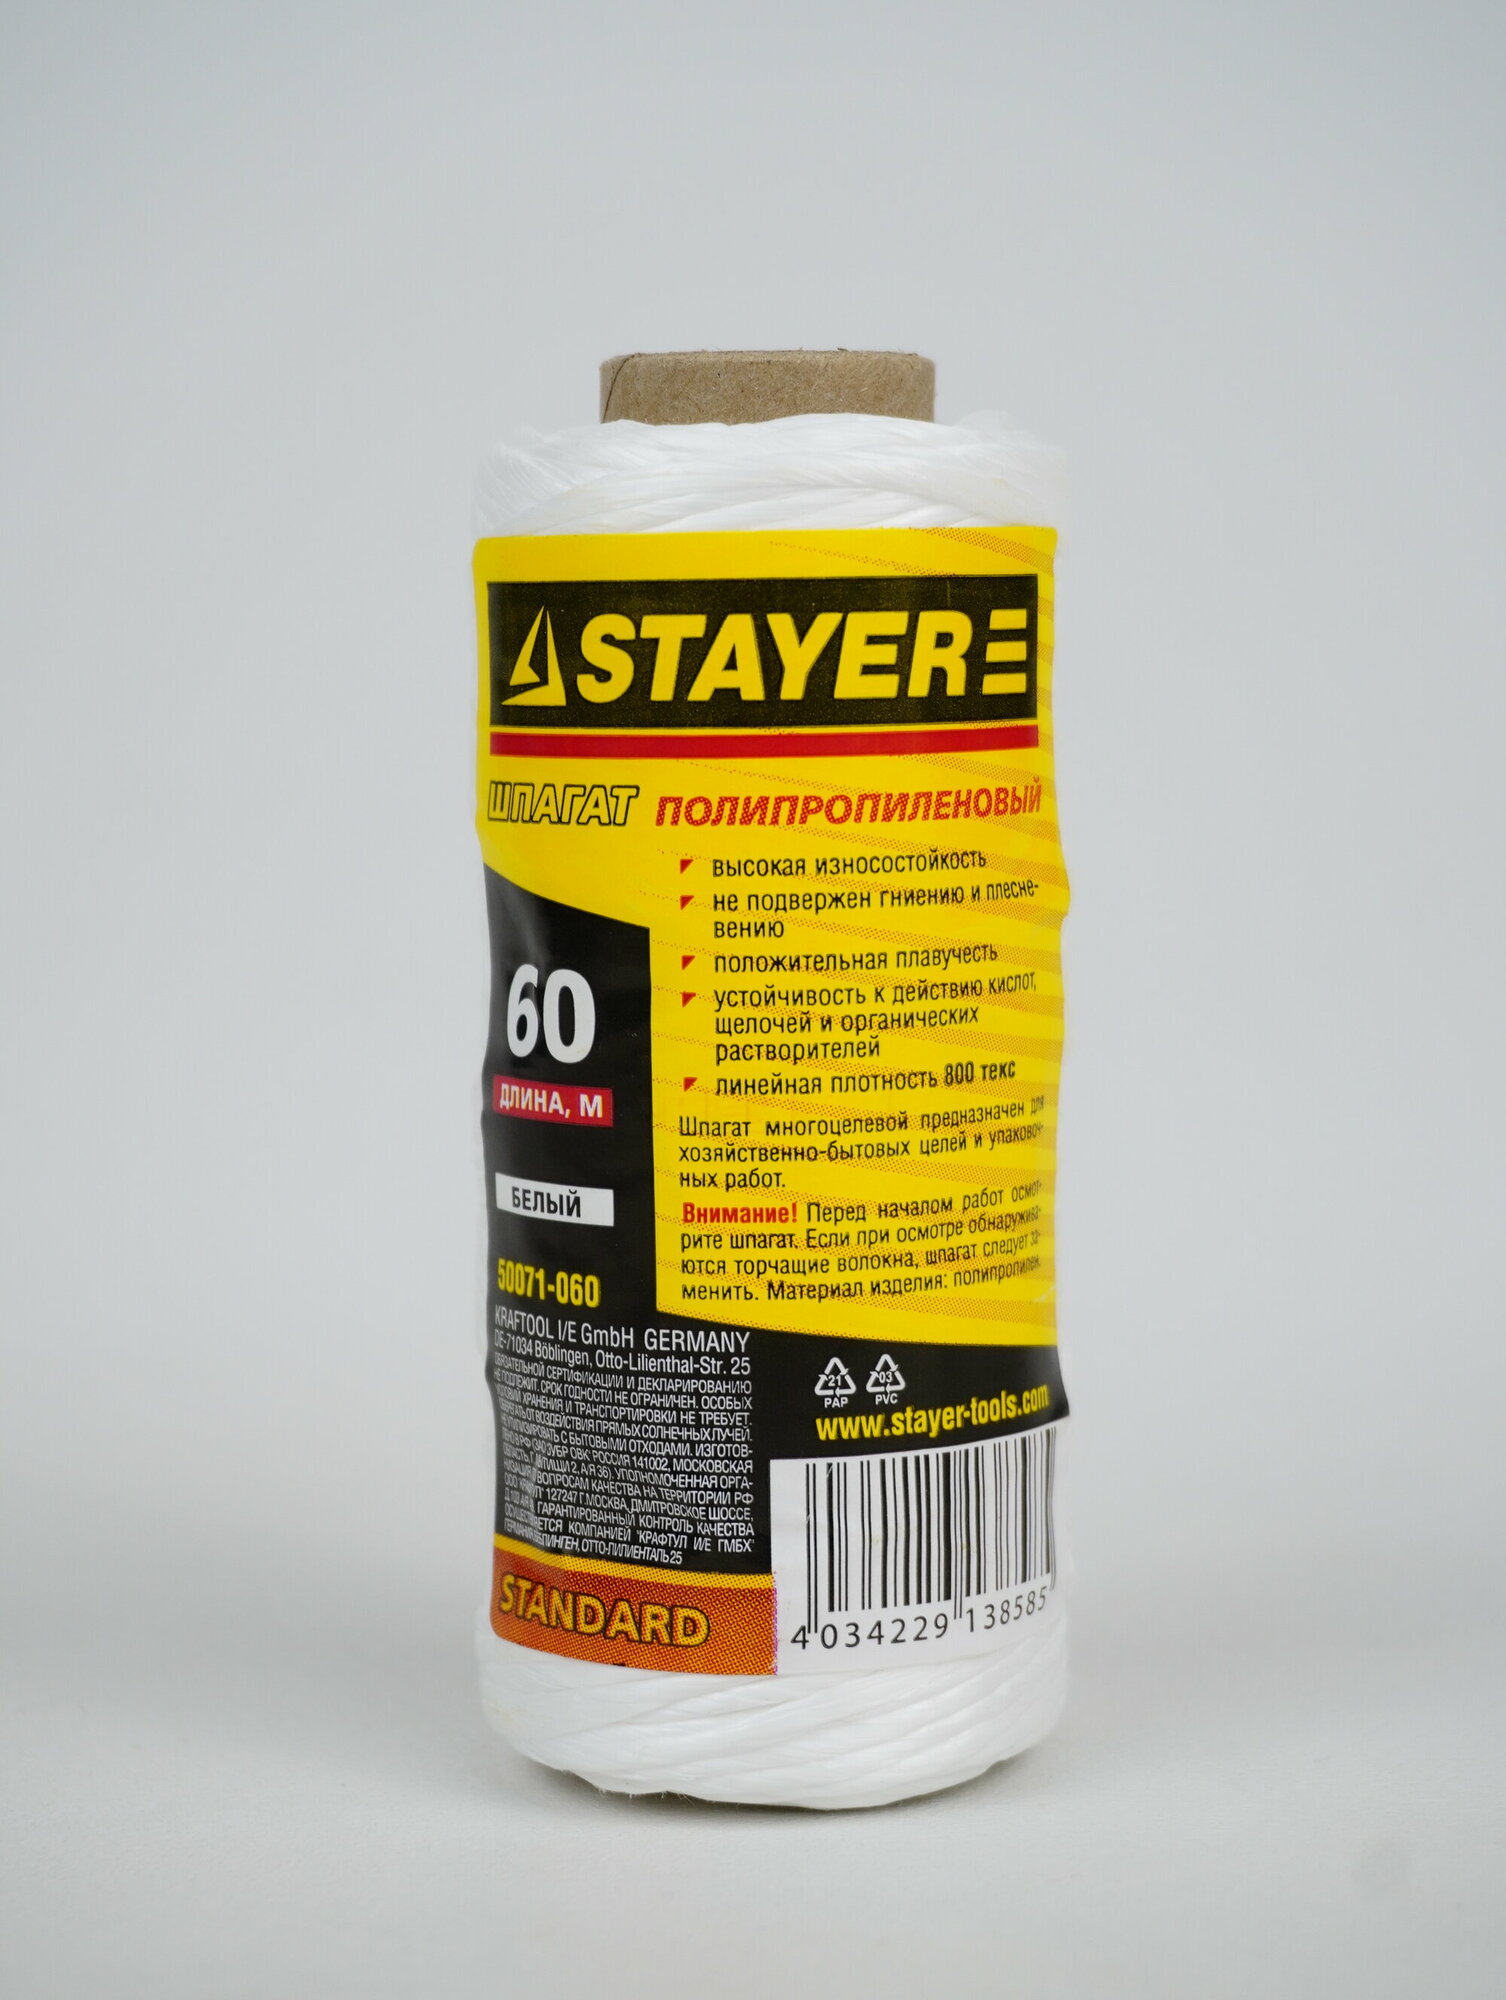 STAYER d=1,5 мм, 60 м, 800 текс, 32 кгс, белый, полипропиленовый шпагат 50071-060